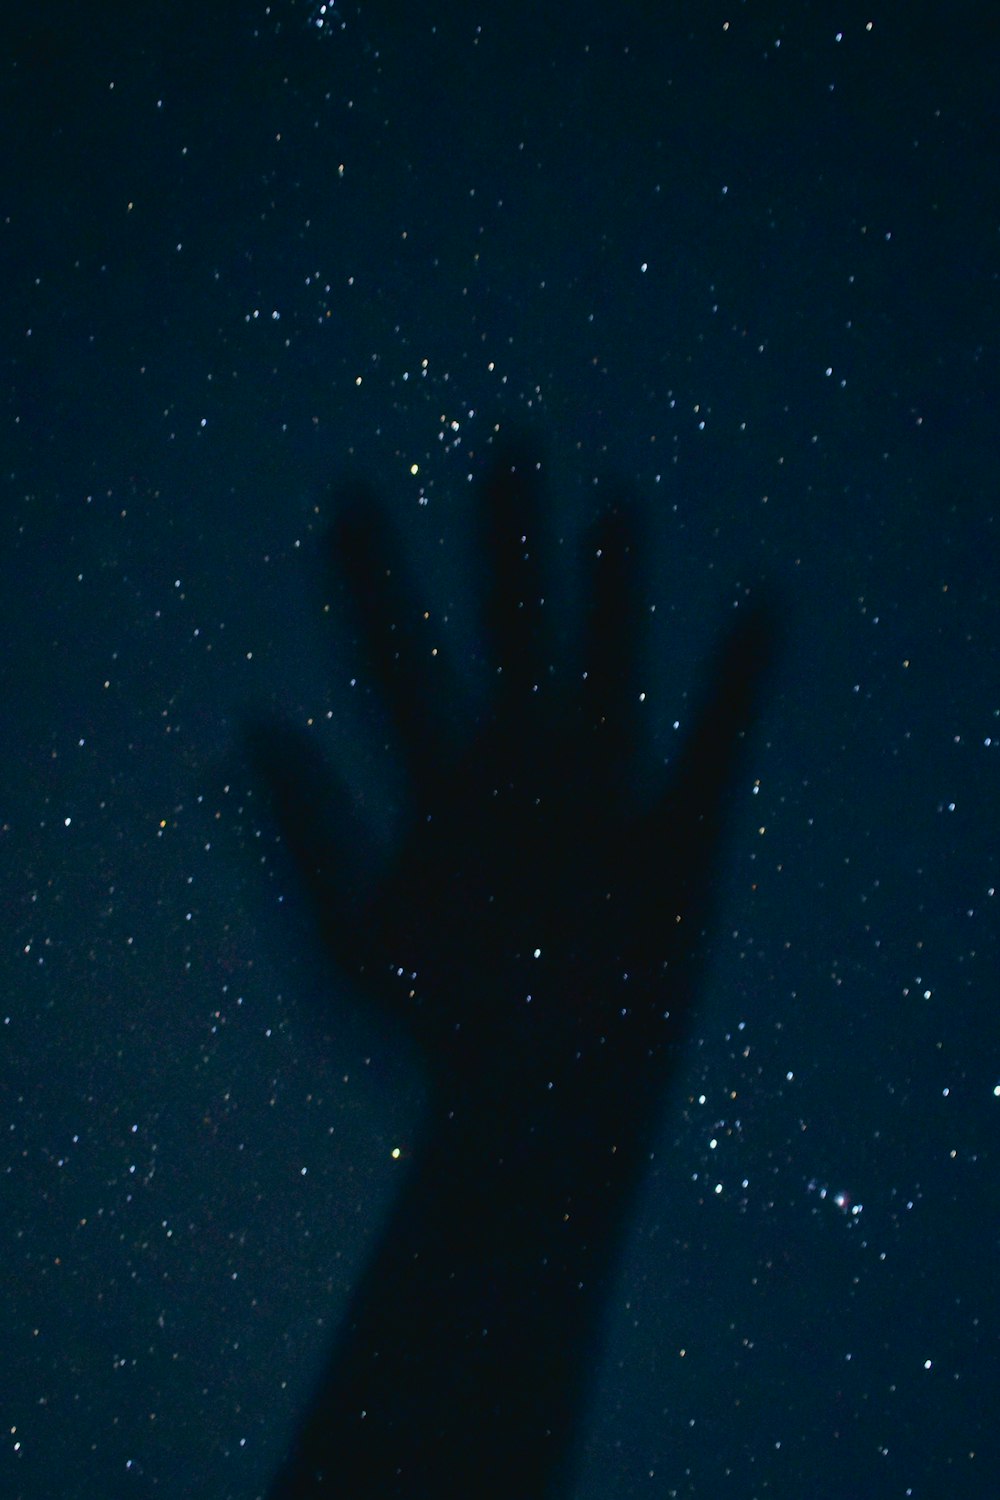 La main d’une personne se dessine dans le ciel nocturne